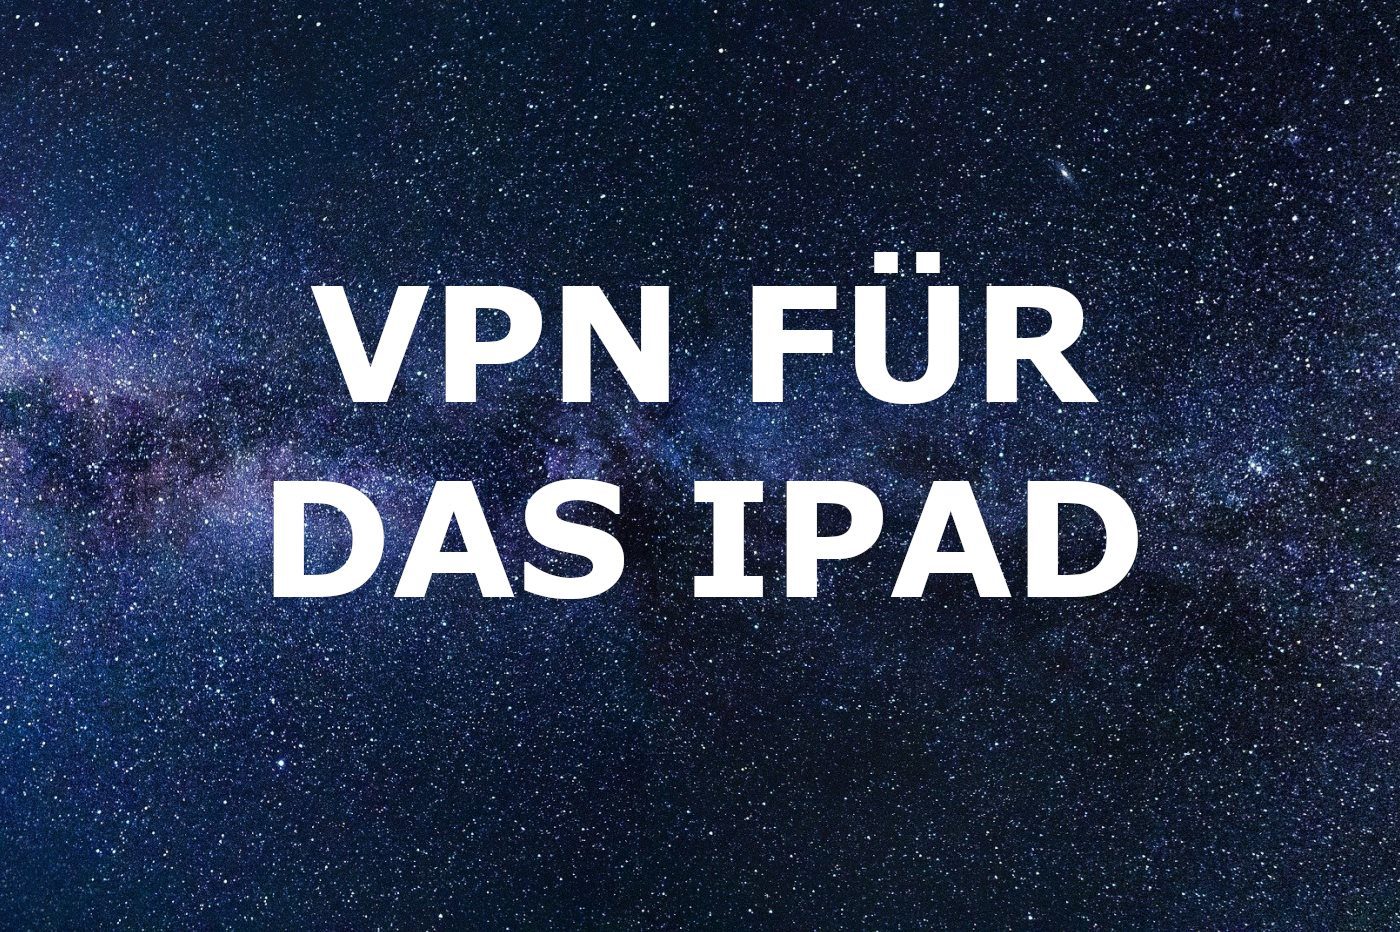 VPN iPad